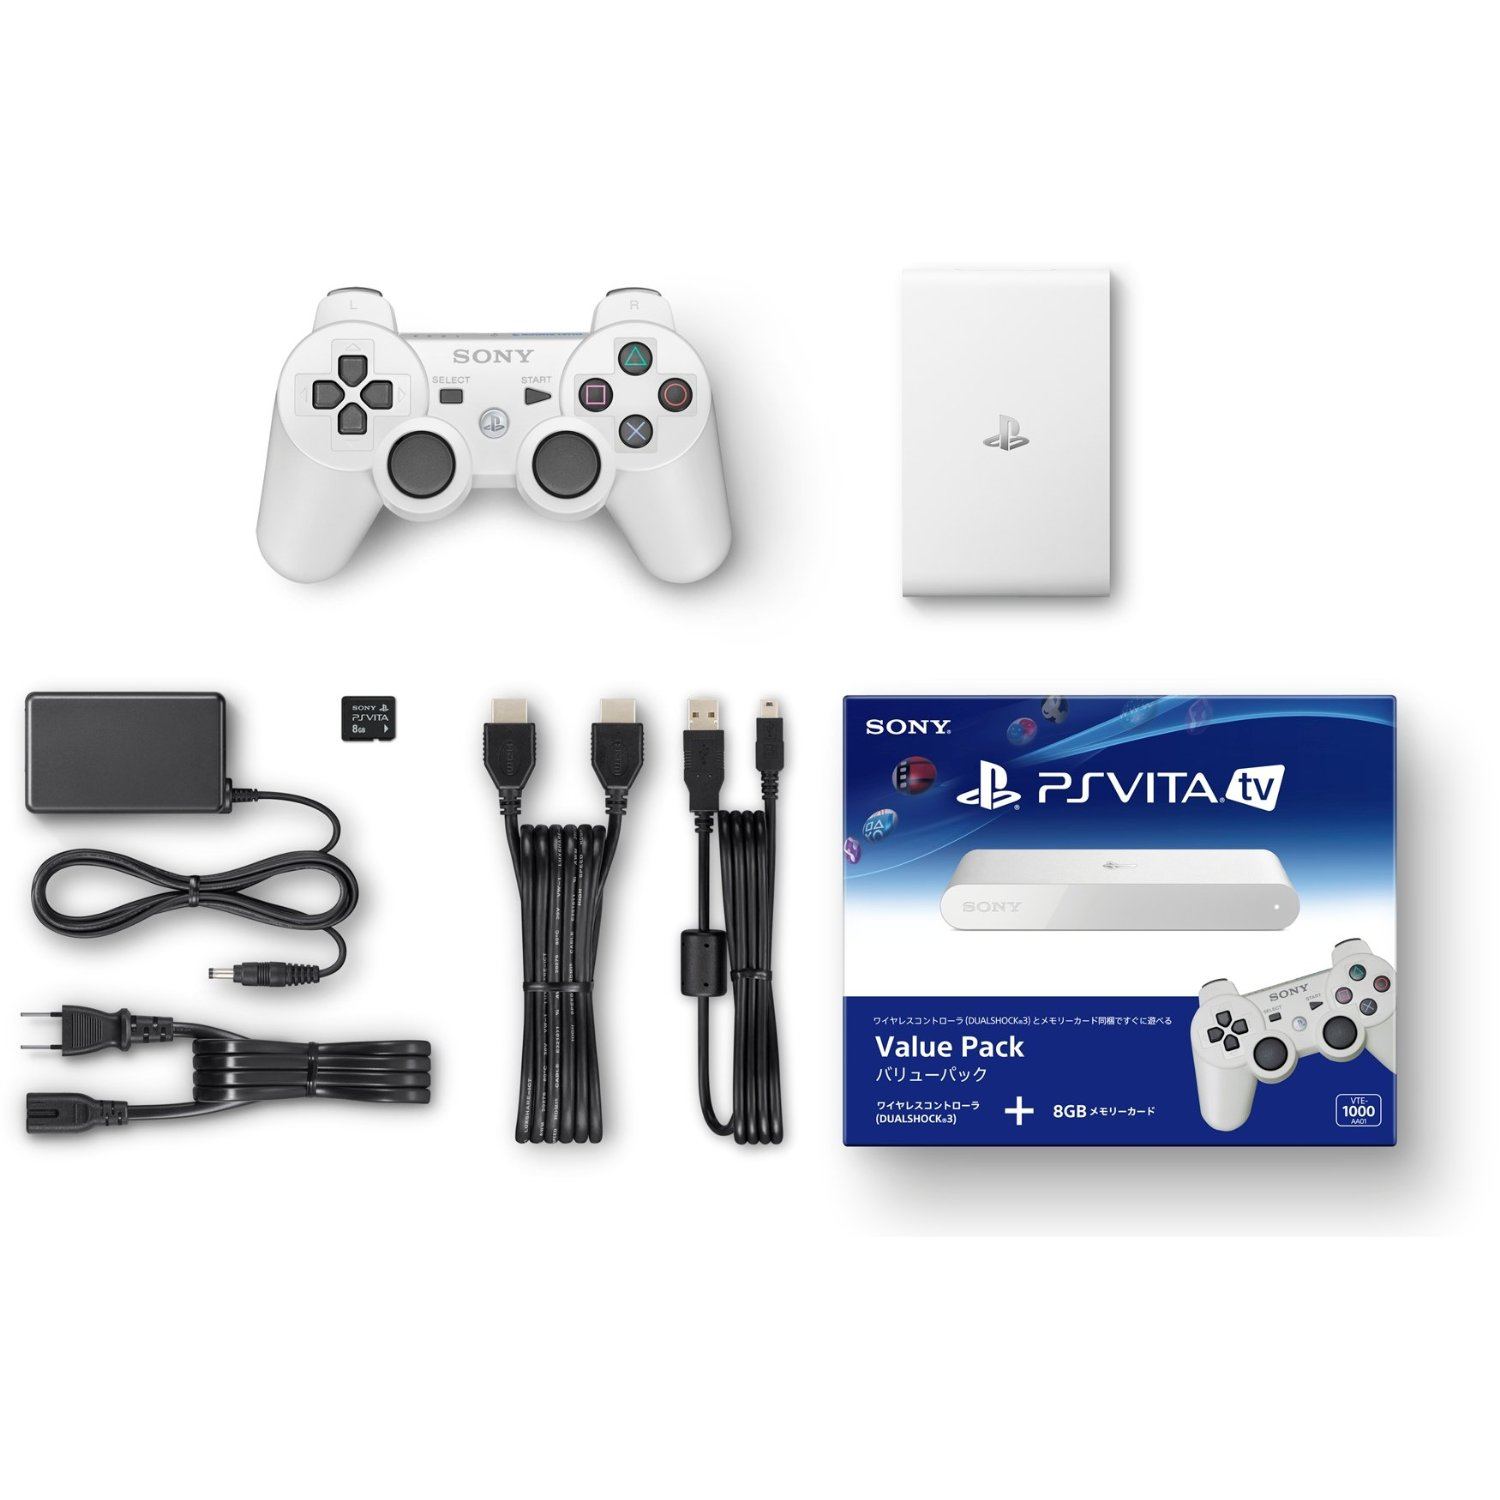 PlayStation Vita TV [Value Pack] - Bitcoin & Lightning accepted